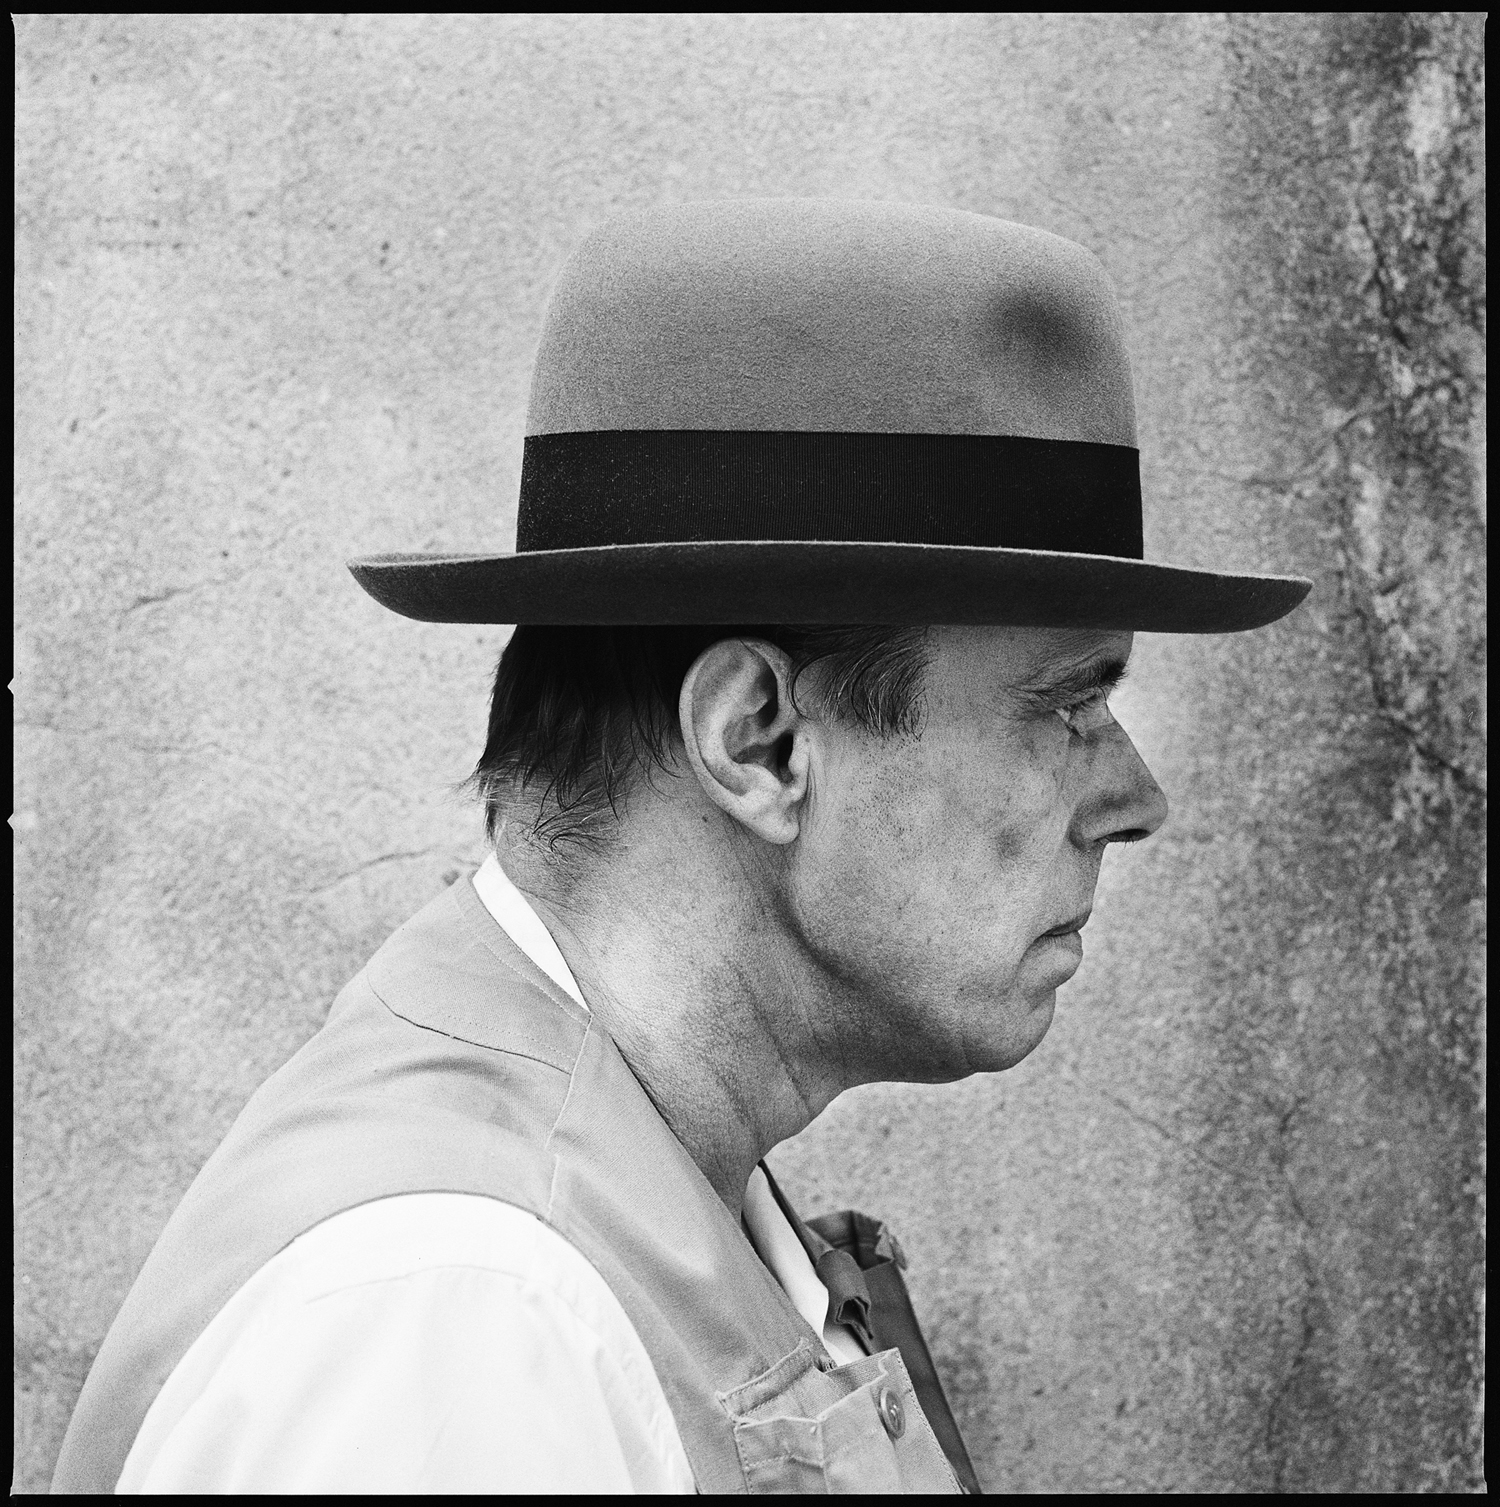 Joseph Beuys, 100 Profile Views